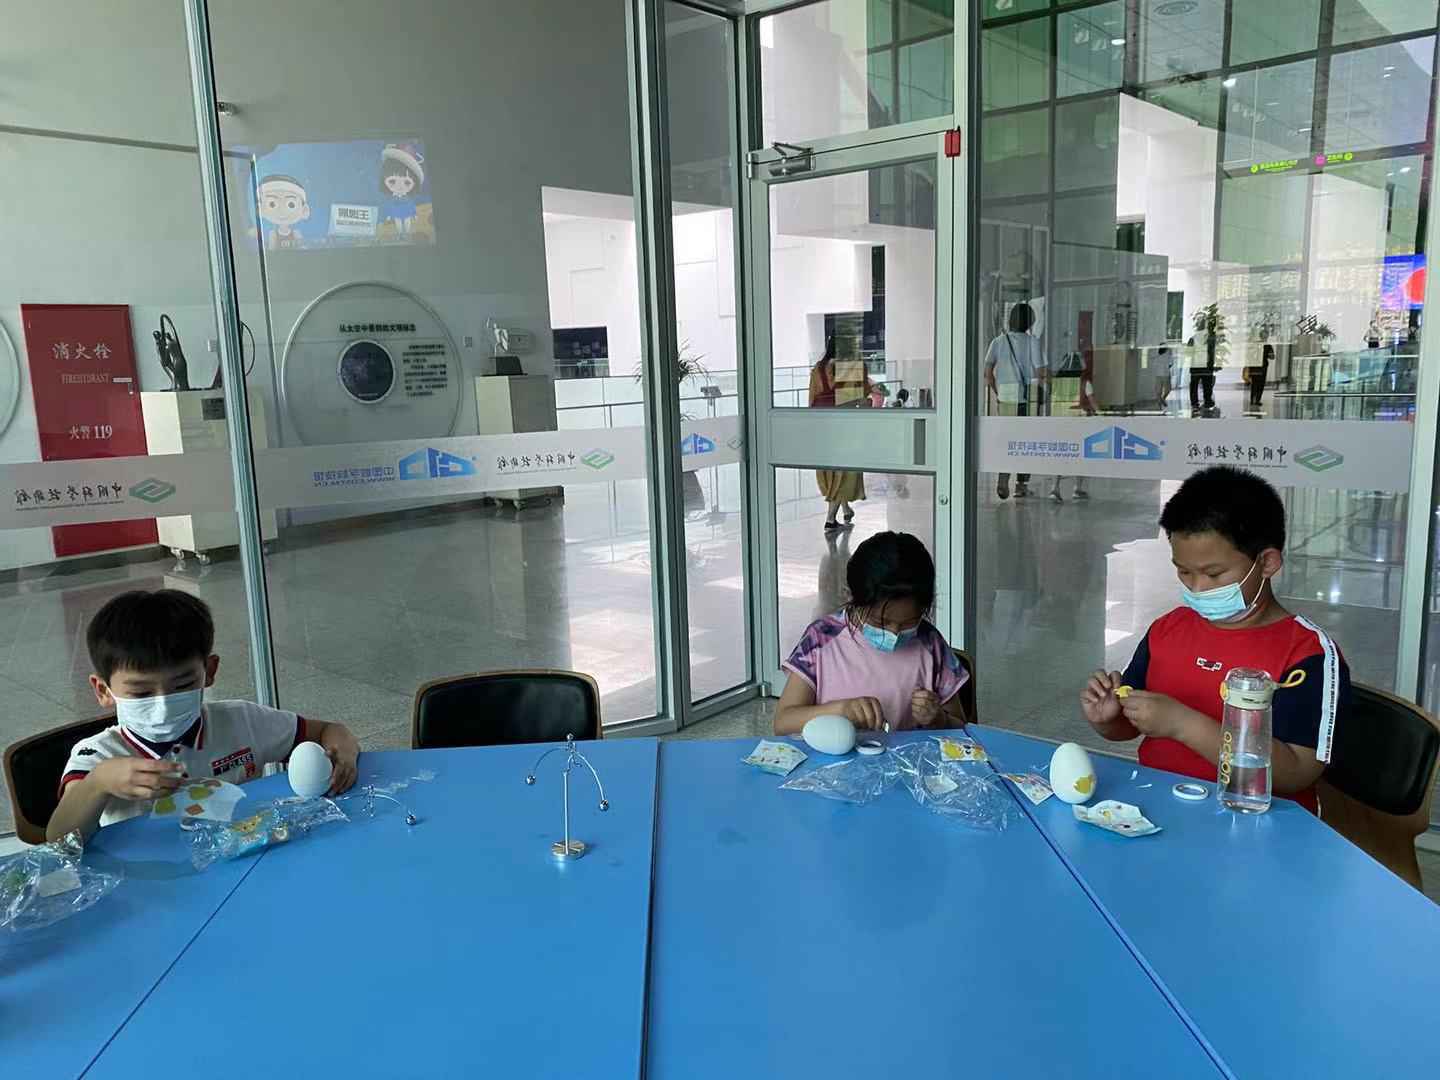 六一 中国科技馆为小朋友们送来欢乐和科学